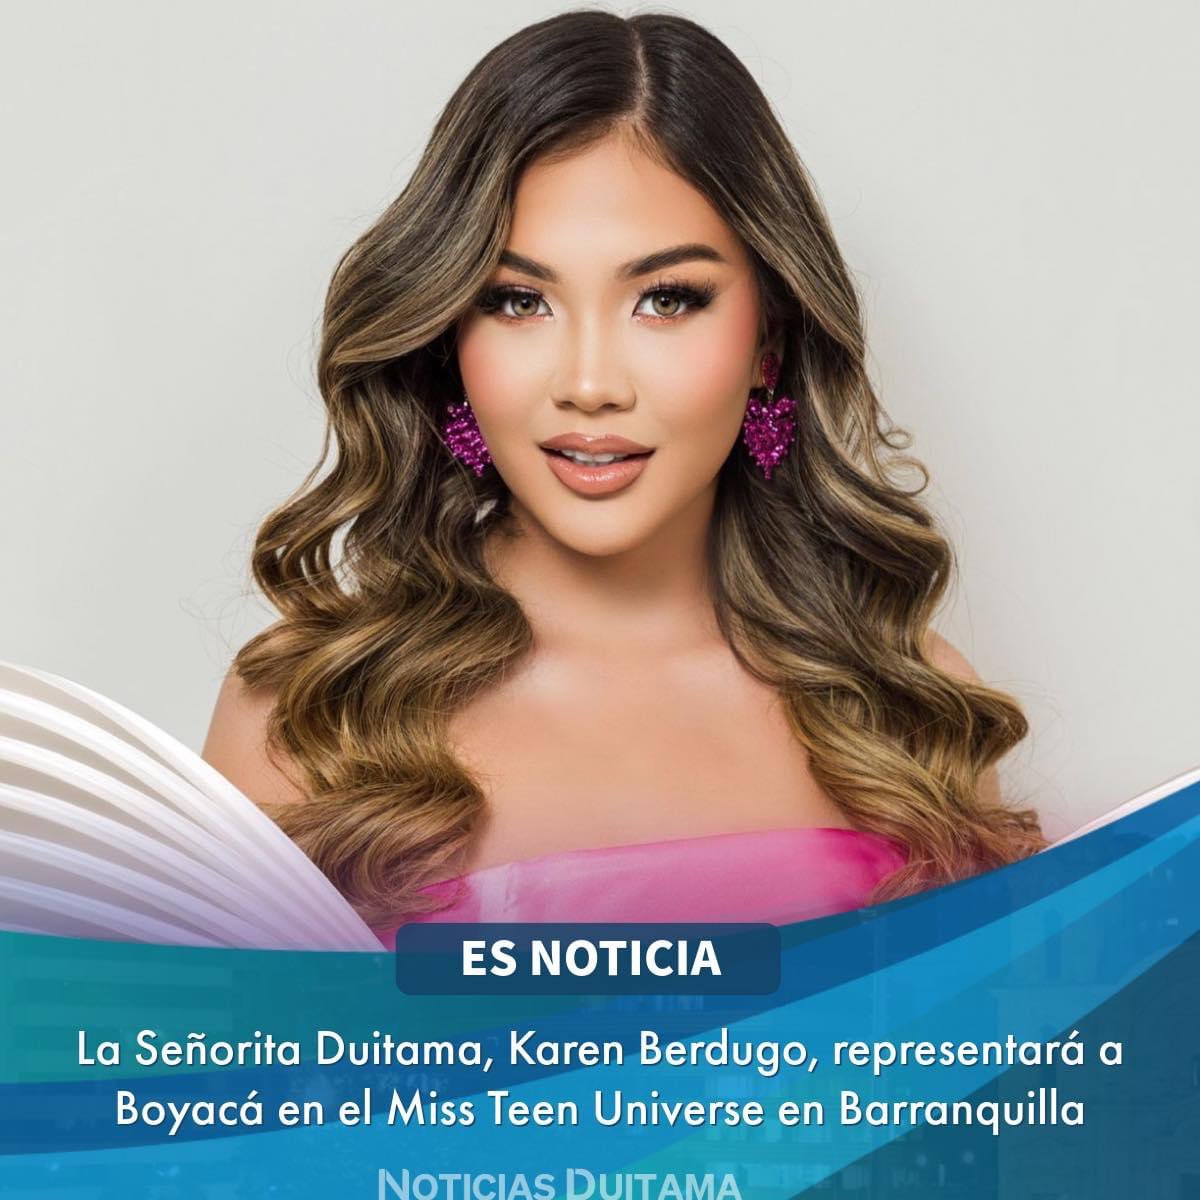 ES NOTICIA: La Señorita Duitama, Karen Berdugo, estará en Barranquilla representando a Boyacá en el Miss Teen Universe

facebook.com/share/p/qdXg9z…